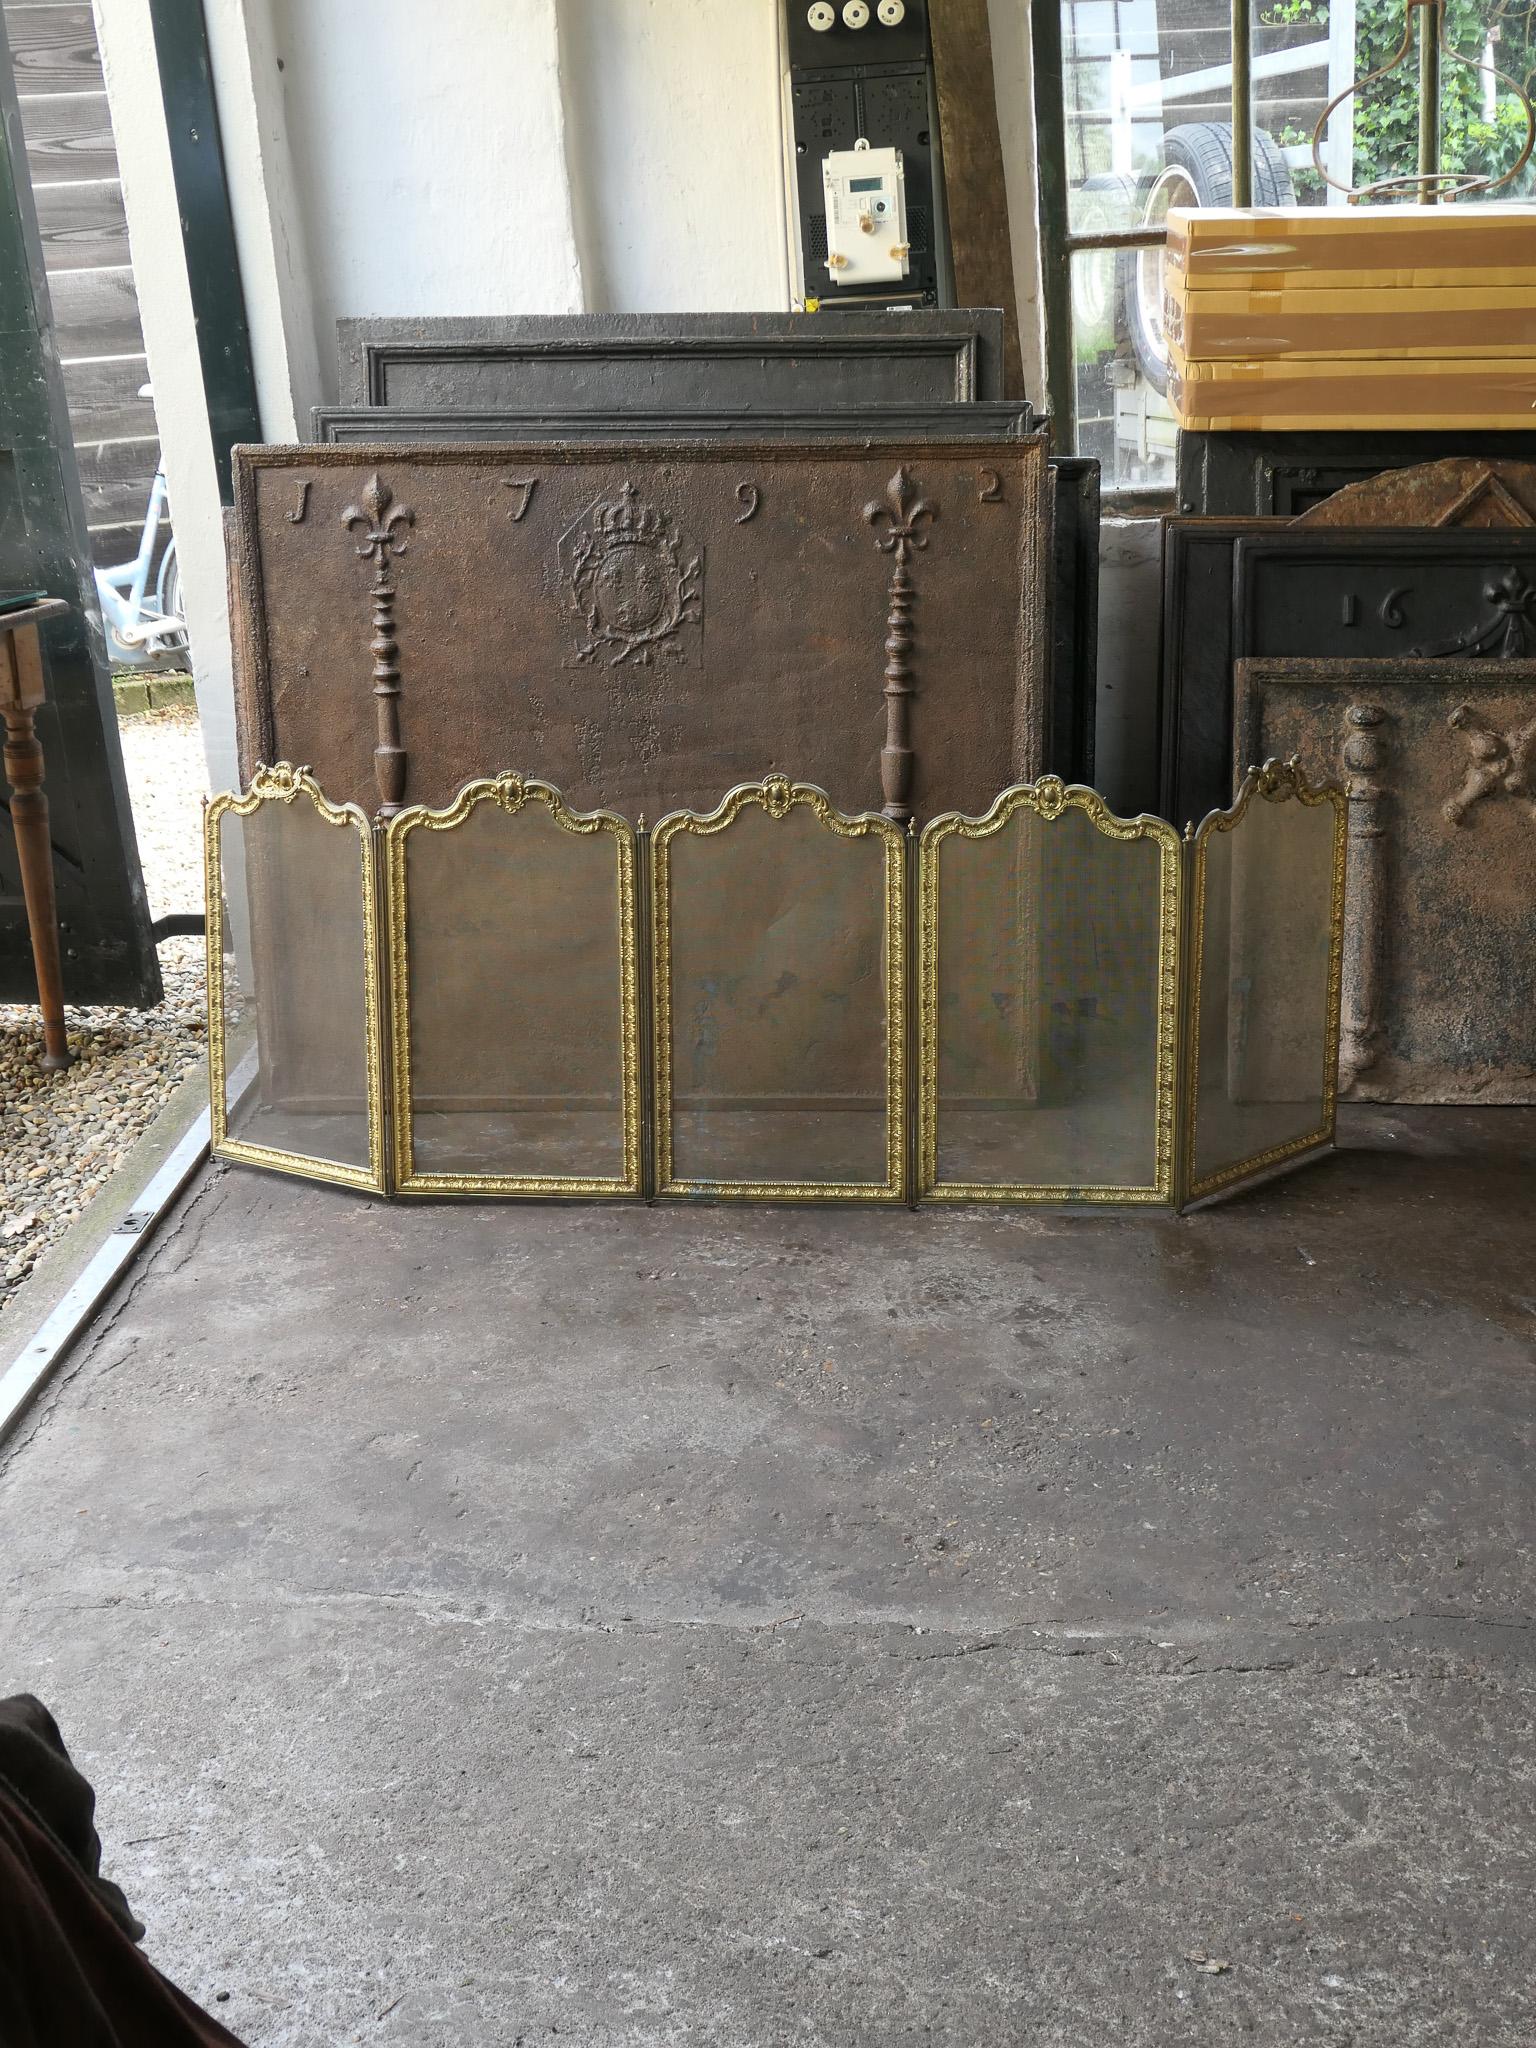 Magnifique écran de cheminée à cinq panneaux de style Napoléon III, réalisé par Bouhon Frères au XIXe siècle. Le tamis est fabriqué en laiton, en fer et en maille de fer. 

Bouhon Frères était un important fabricant français d'outils de cheminée au